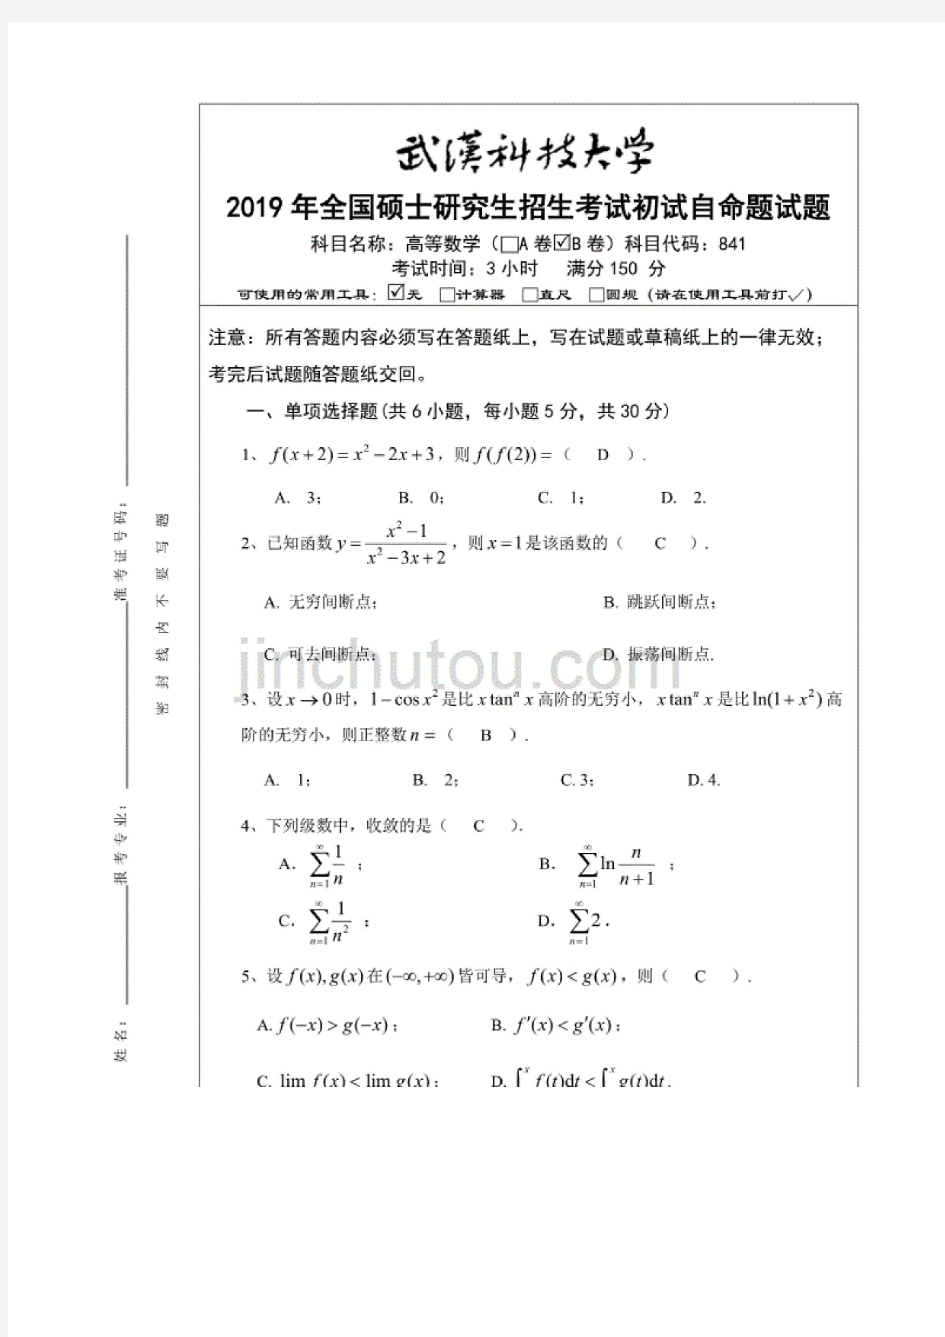 武汉科技大学2019年全国硕士研究生招生考试初试自命题841高等数学B卷答案